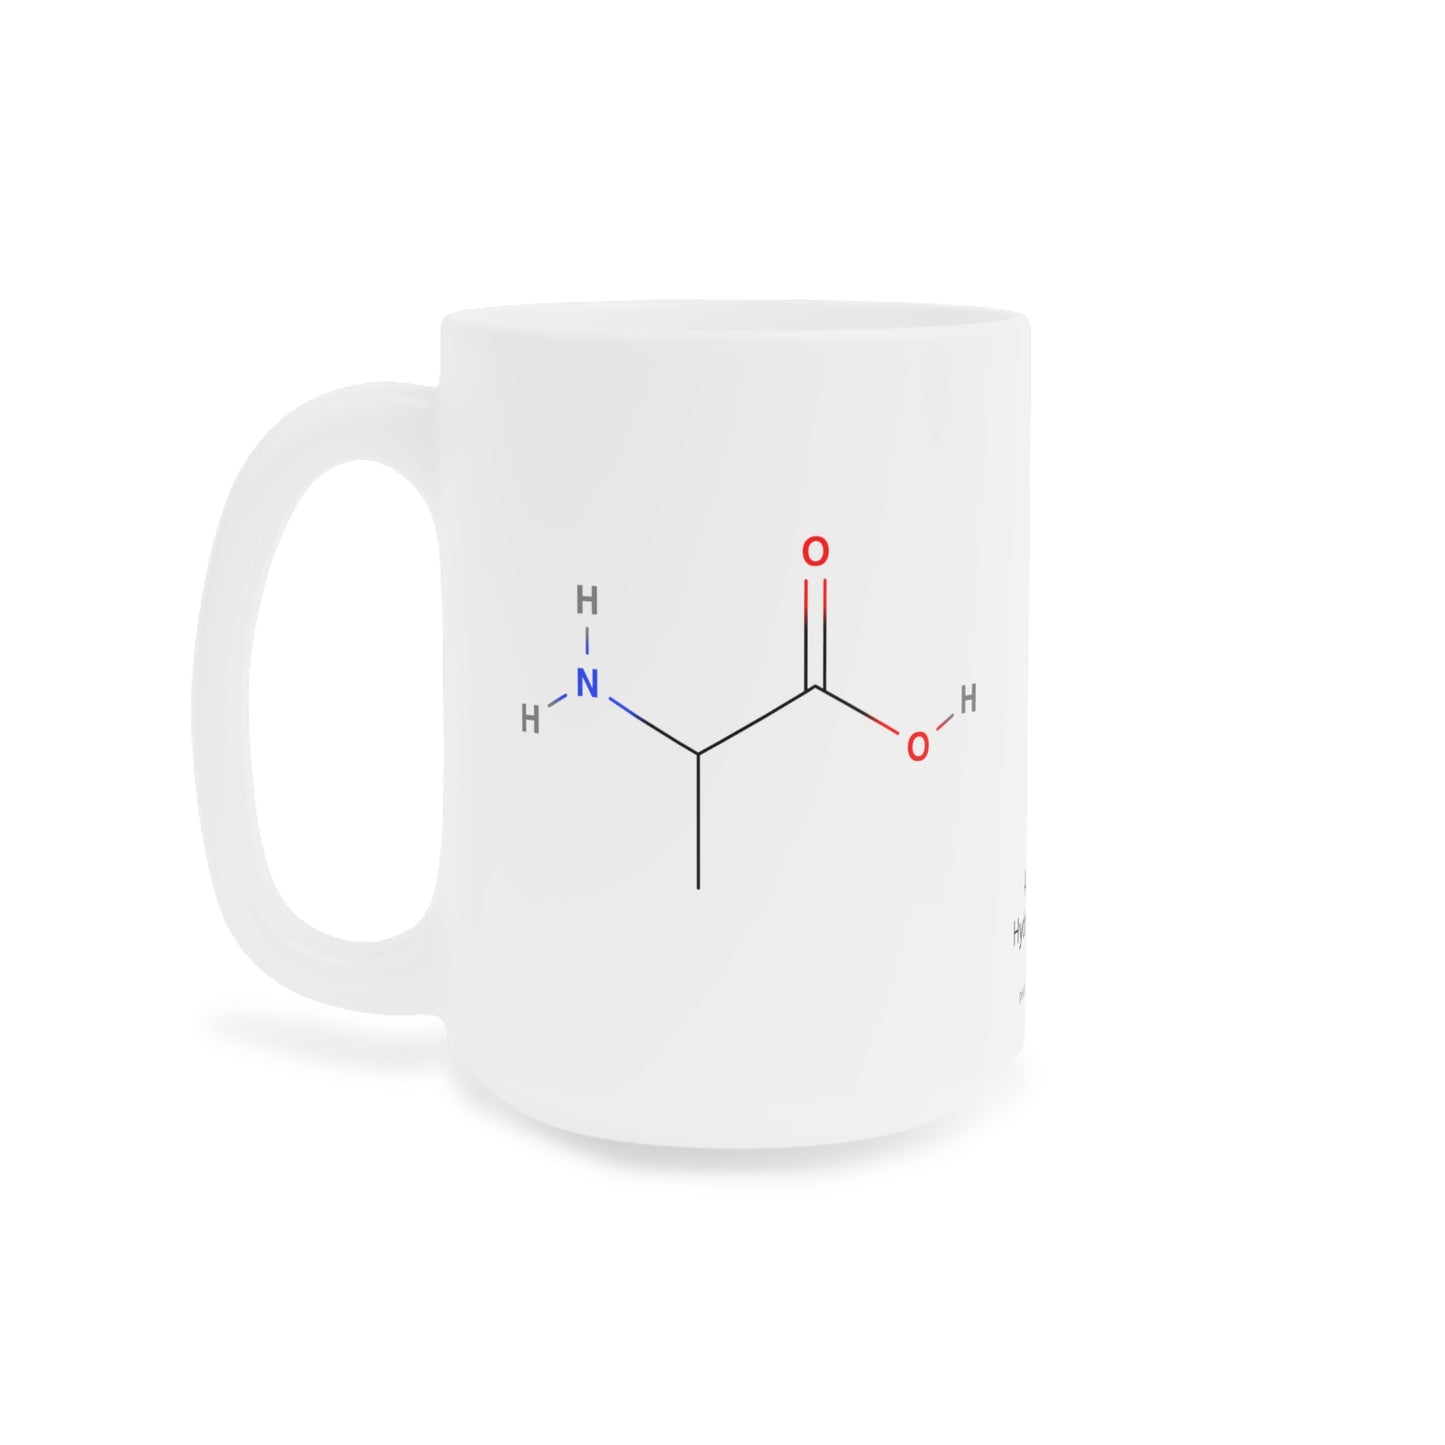 Coffee Mug 15oz - Alanine